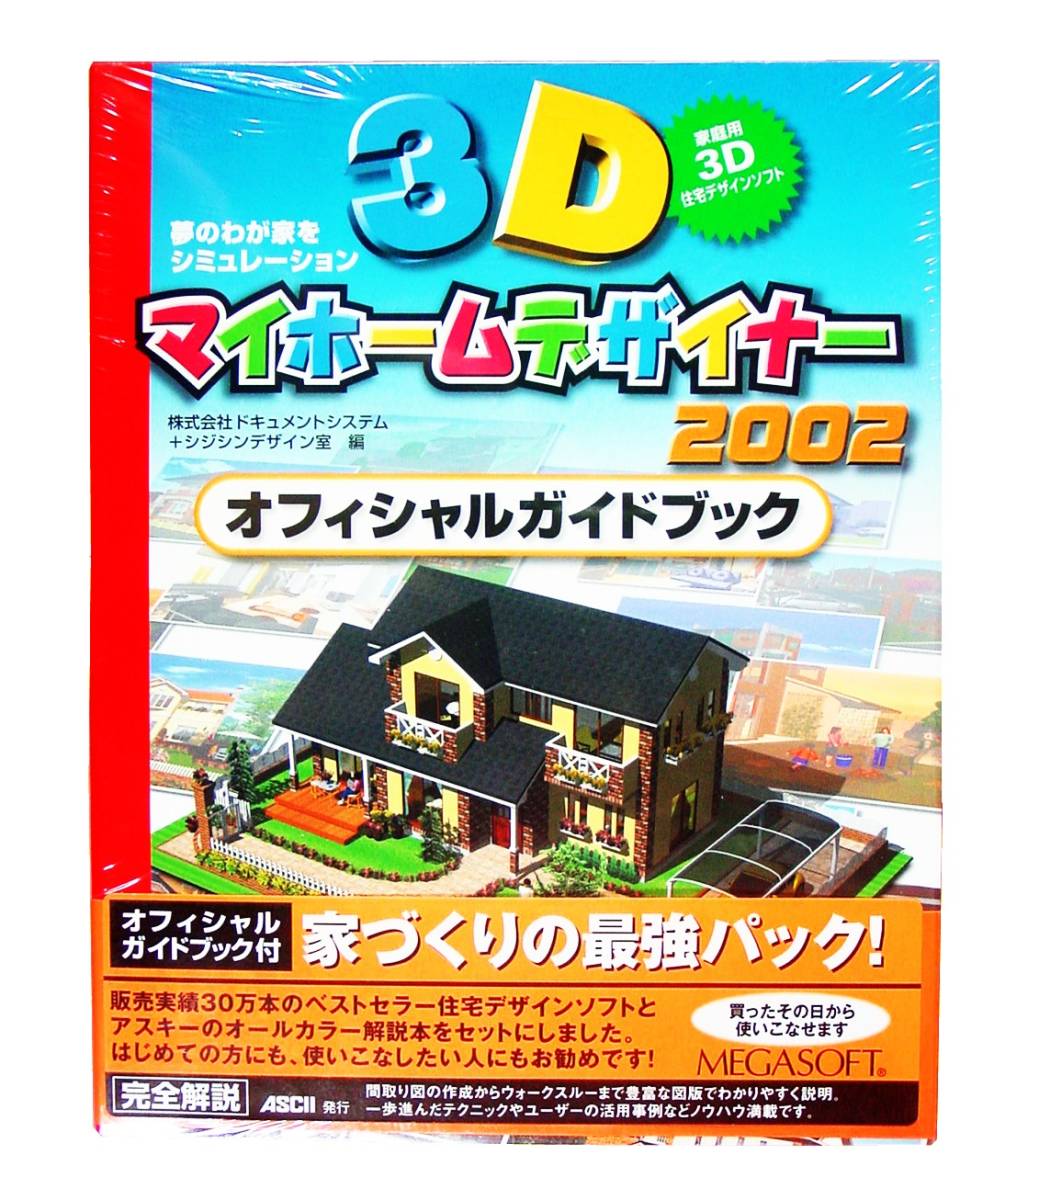 人気 2002 3Dマイホームデザイナー MEGASOFT 【629】 未開封品